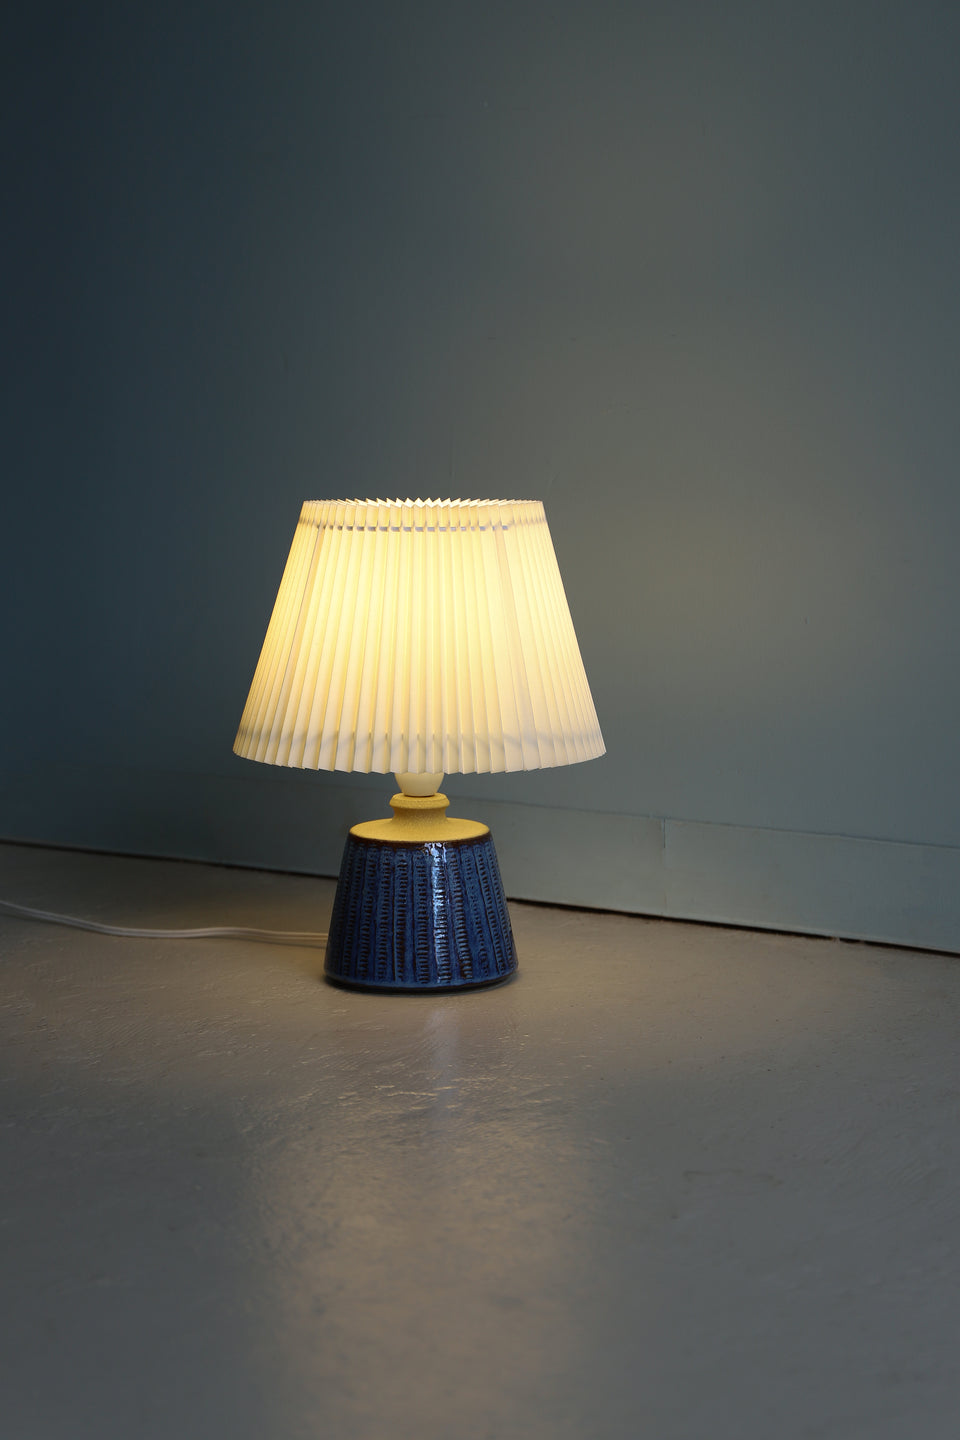 Søholm Table Lamp Model 3044 Maria Philippi Danish Vintage/スーホルム テーブルランプ マリア・フィリッピ デンマークヴィンテージ 間接照明 北欧インテリア